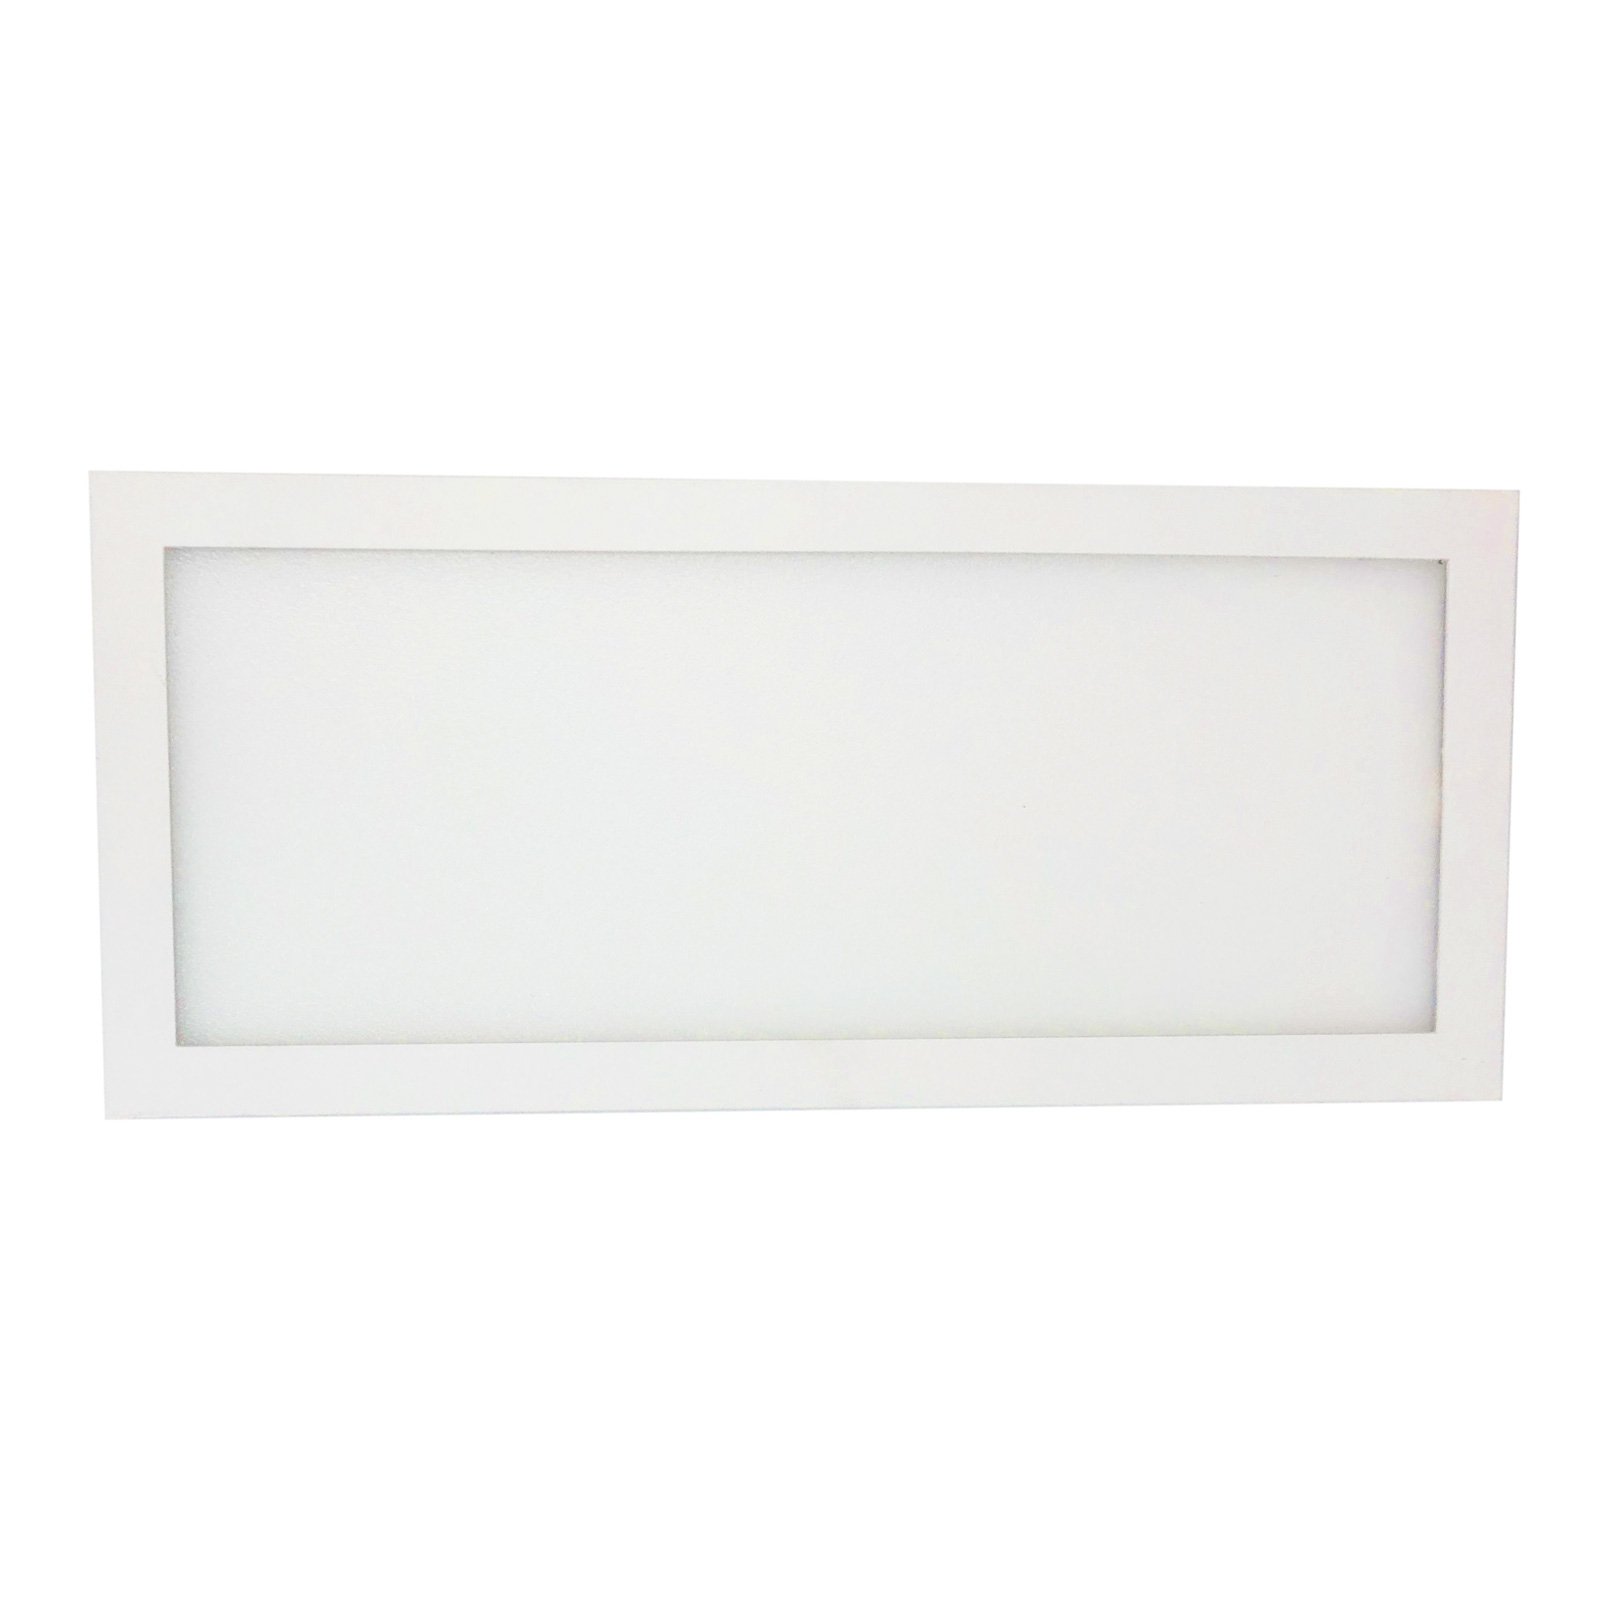 Φωτιστικό LED κάτω από το ντουλάπι Unta Slim 5W, λευκό